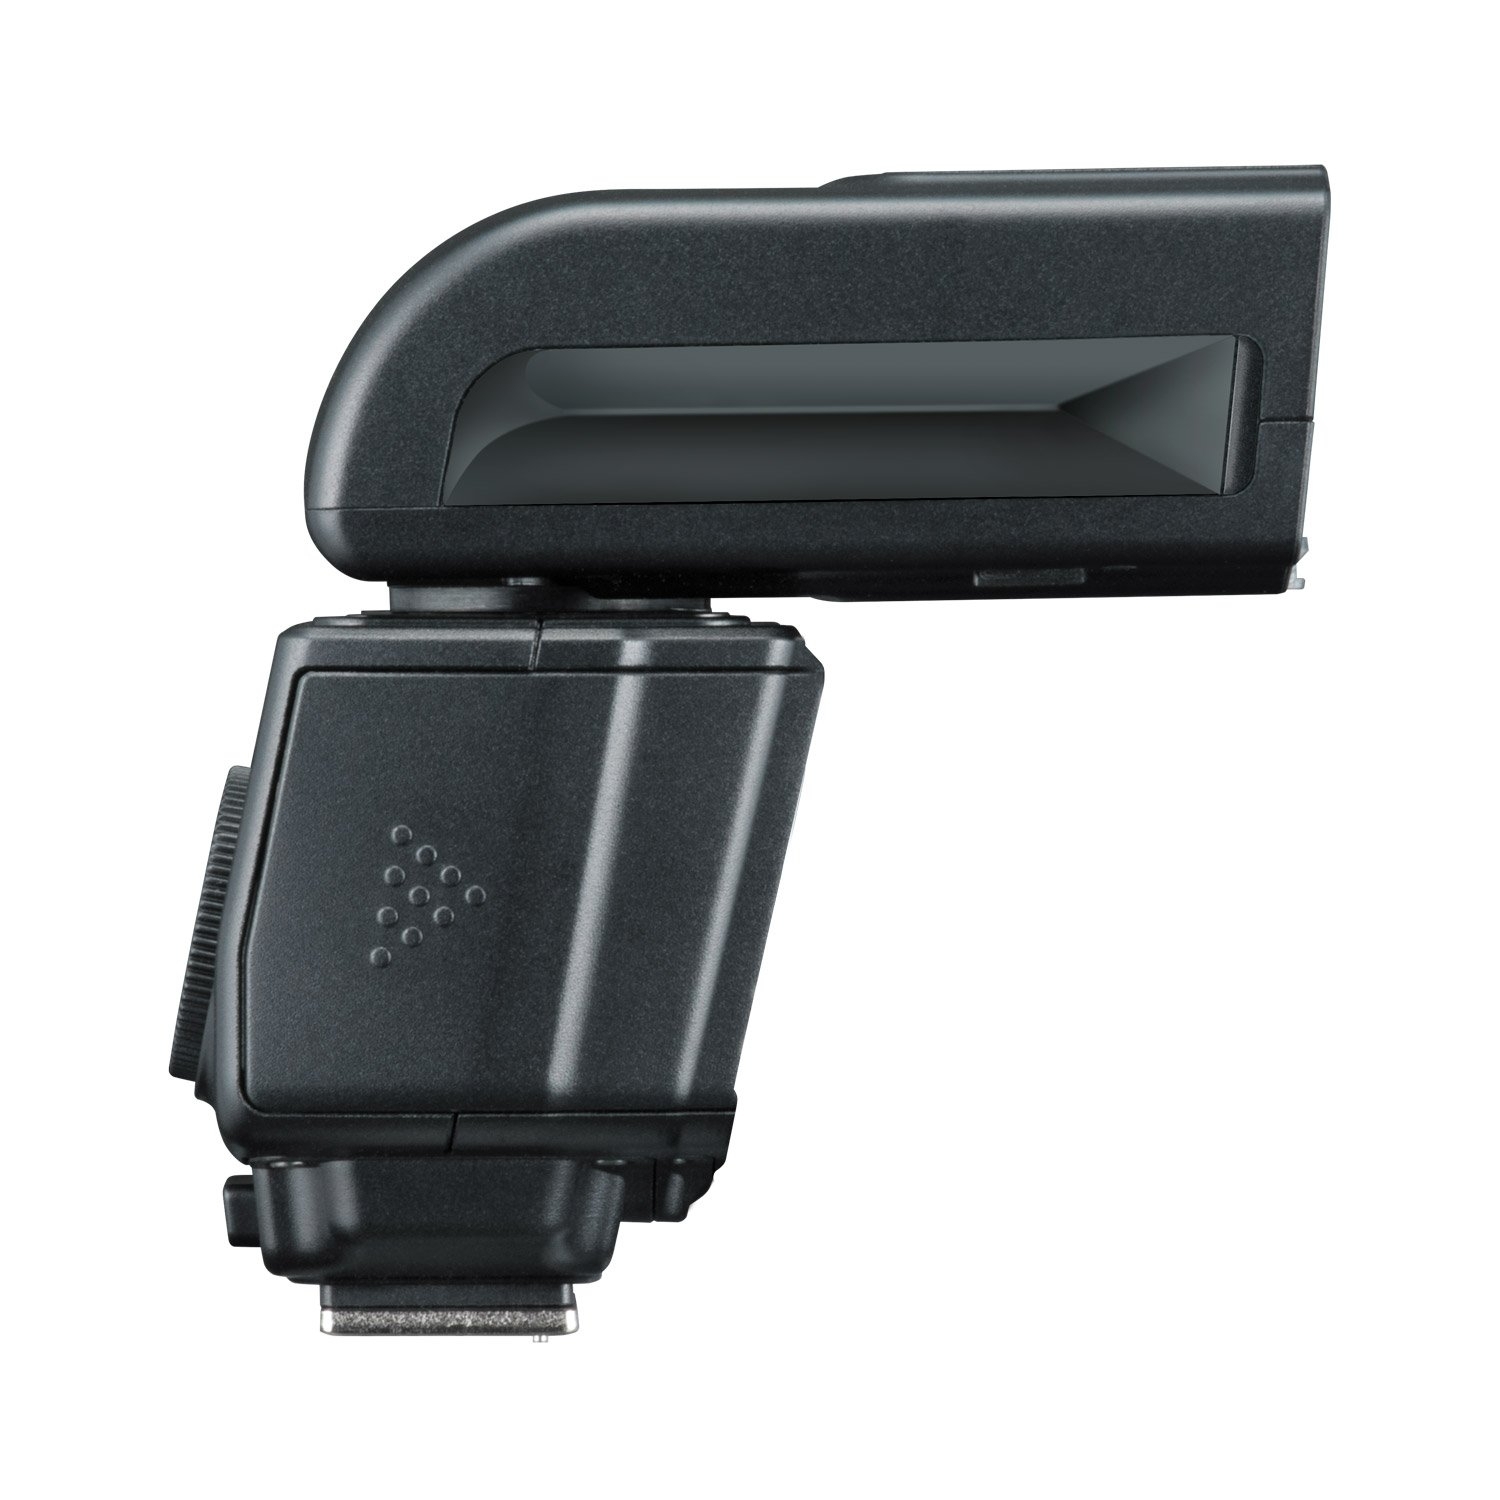 Nissin i400 Flash Unit for Canon Cameras Black 